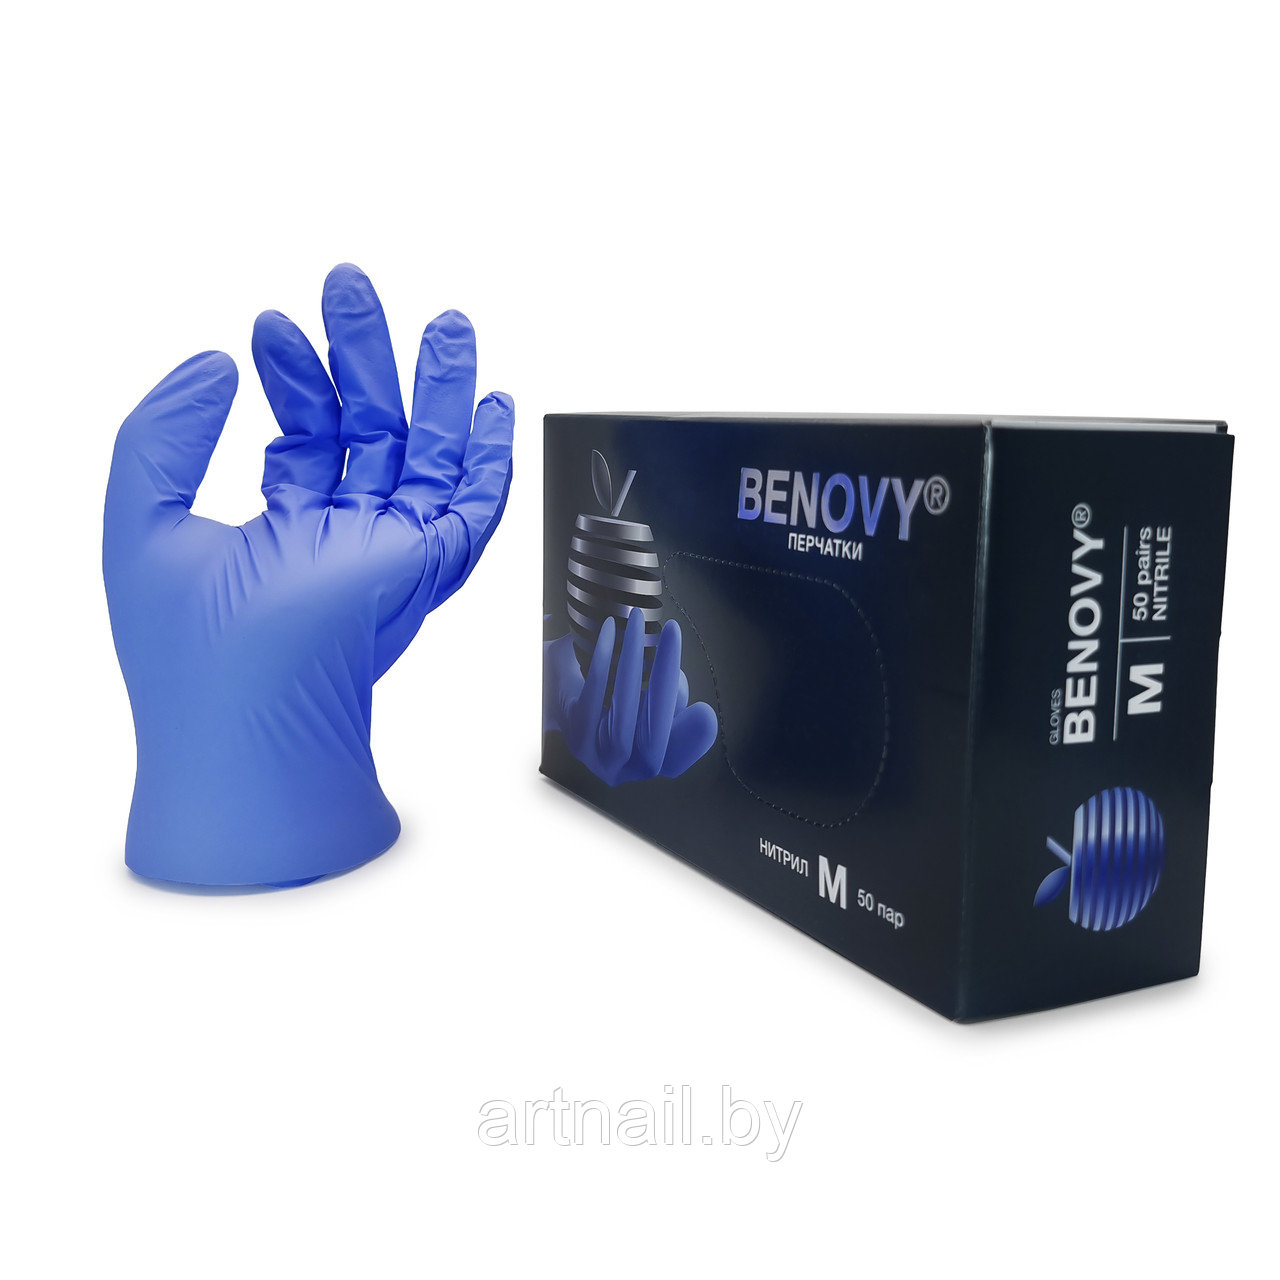 Перчатки нитриловые Benovy, размер M, сиренево-голубые 100 шт/уп. (50 пар)